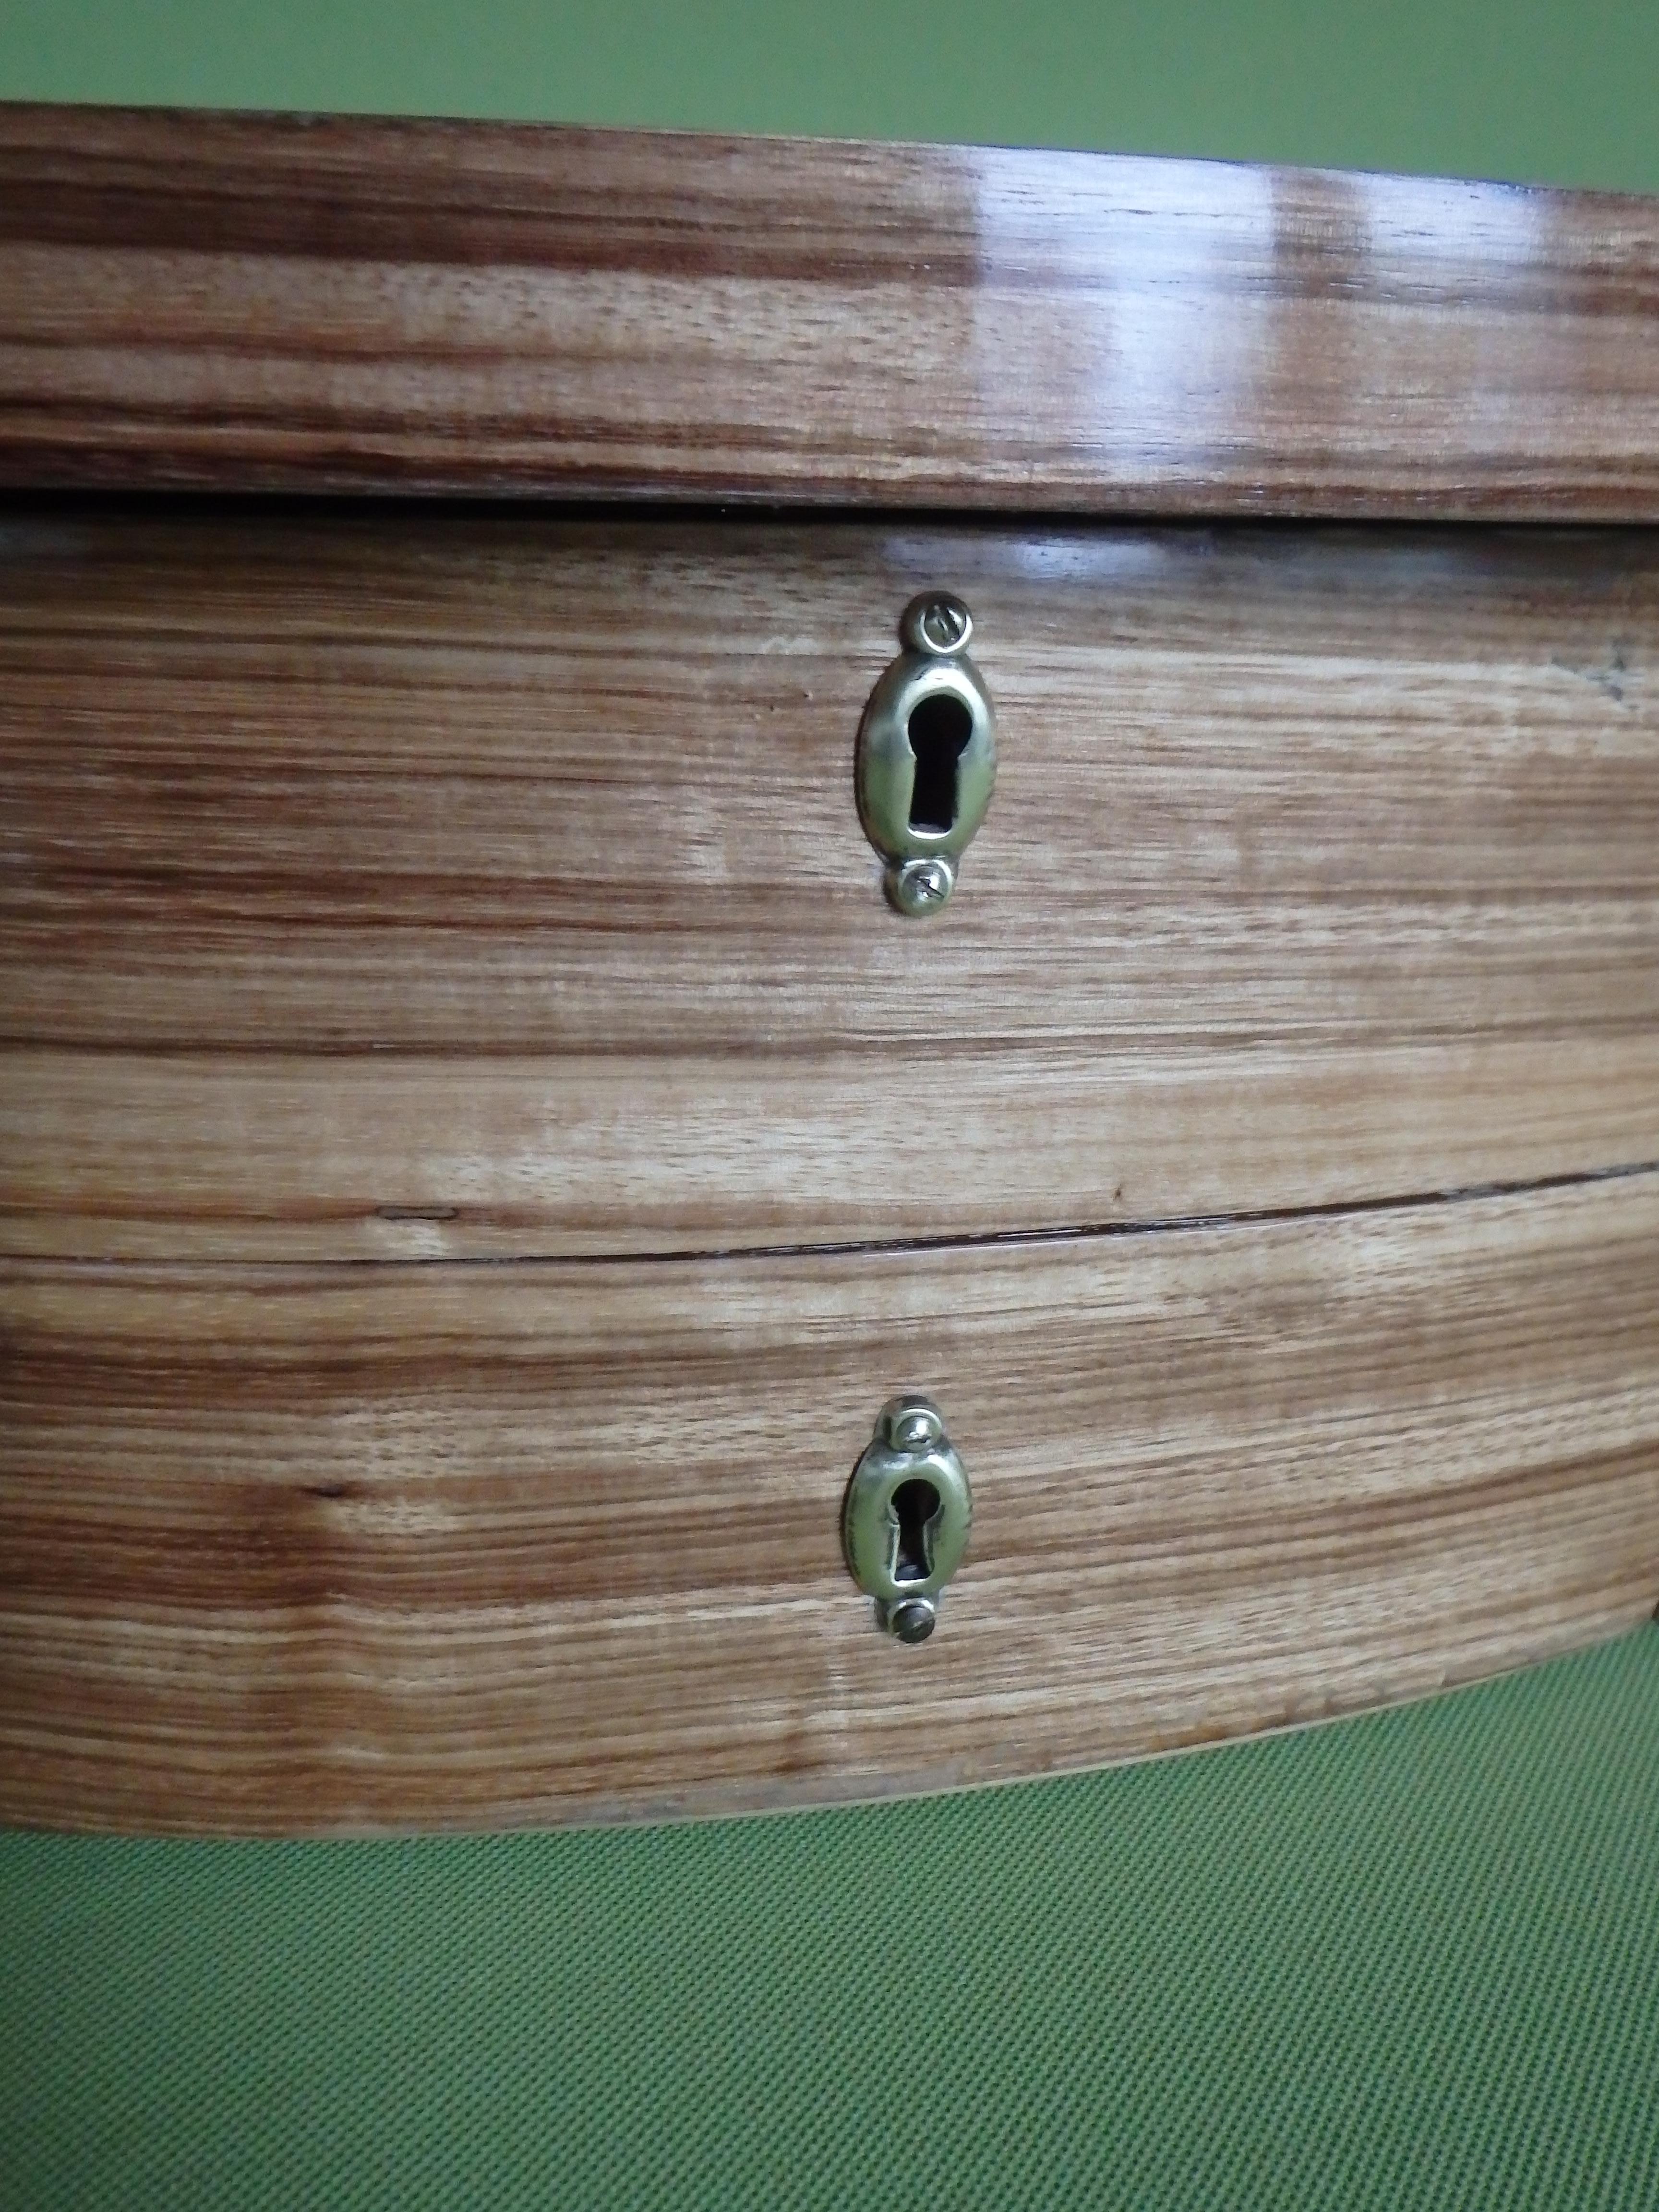 großes Holz  Schmuck- oder Schminkkasten mit ovalem Spiegel für den Schminktisch mit Schublade und 2 Schlössern
Ankleide- oder Schminktruhe 